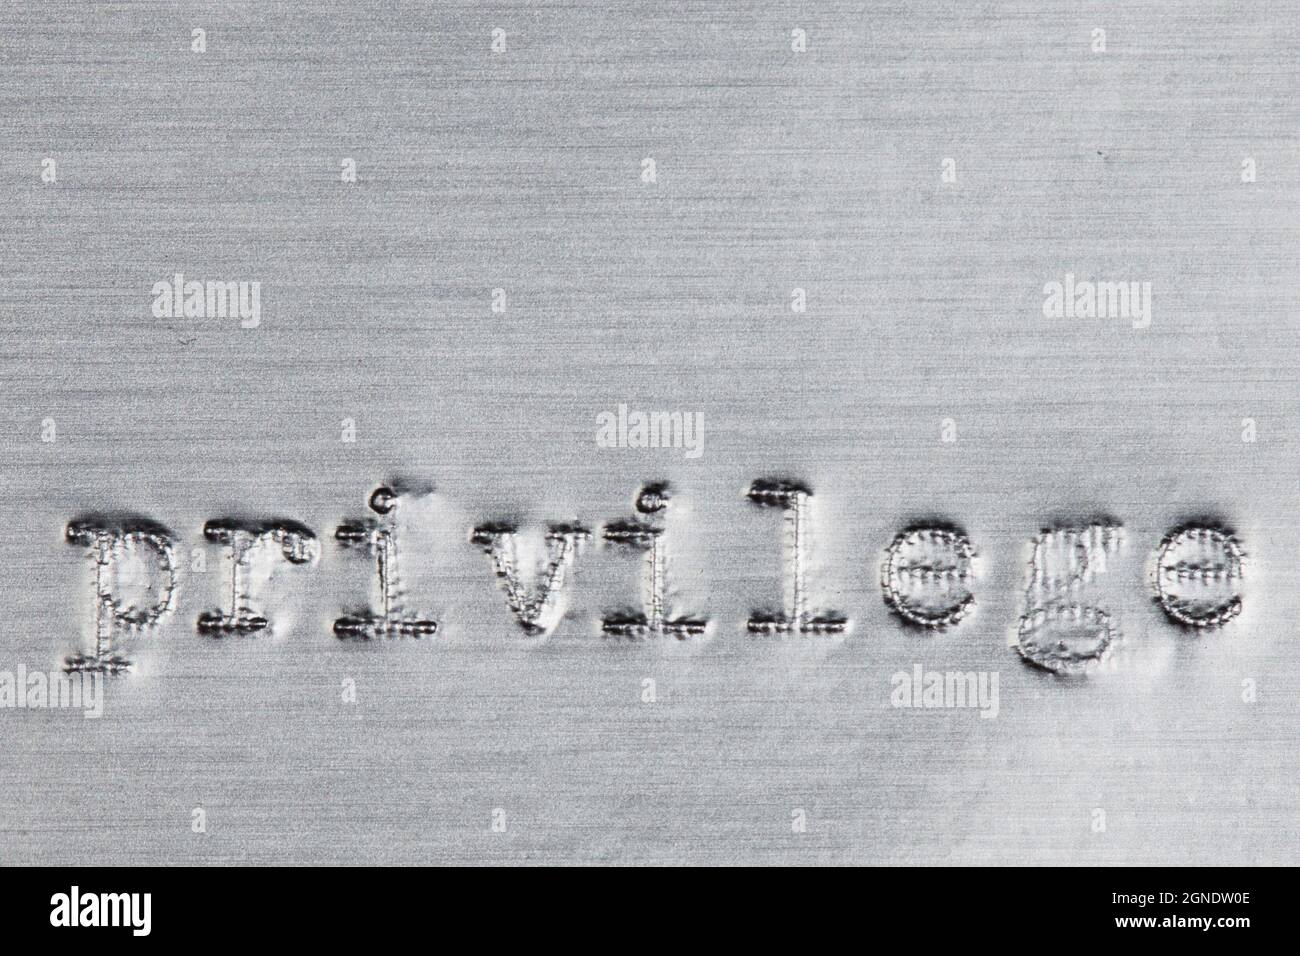 La palabra 'privilegio' impresa en papel de aluminio plateado con una máquina de escribir vintage. Foto de stock